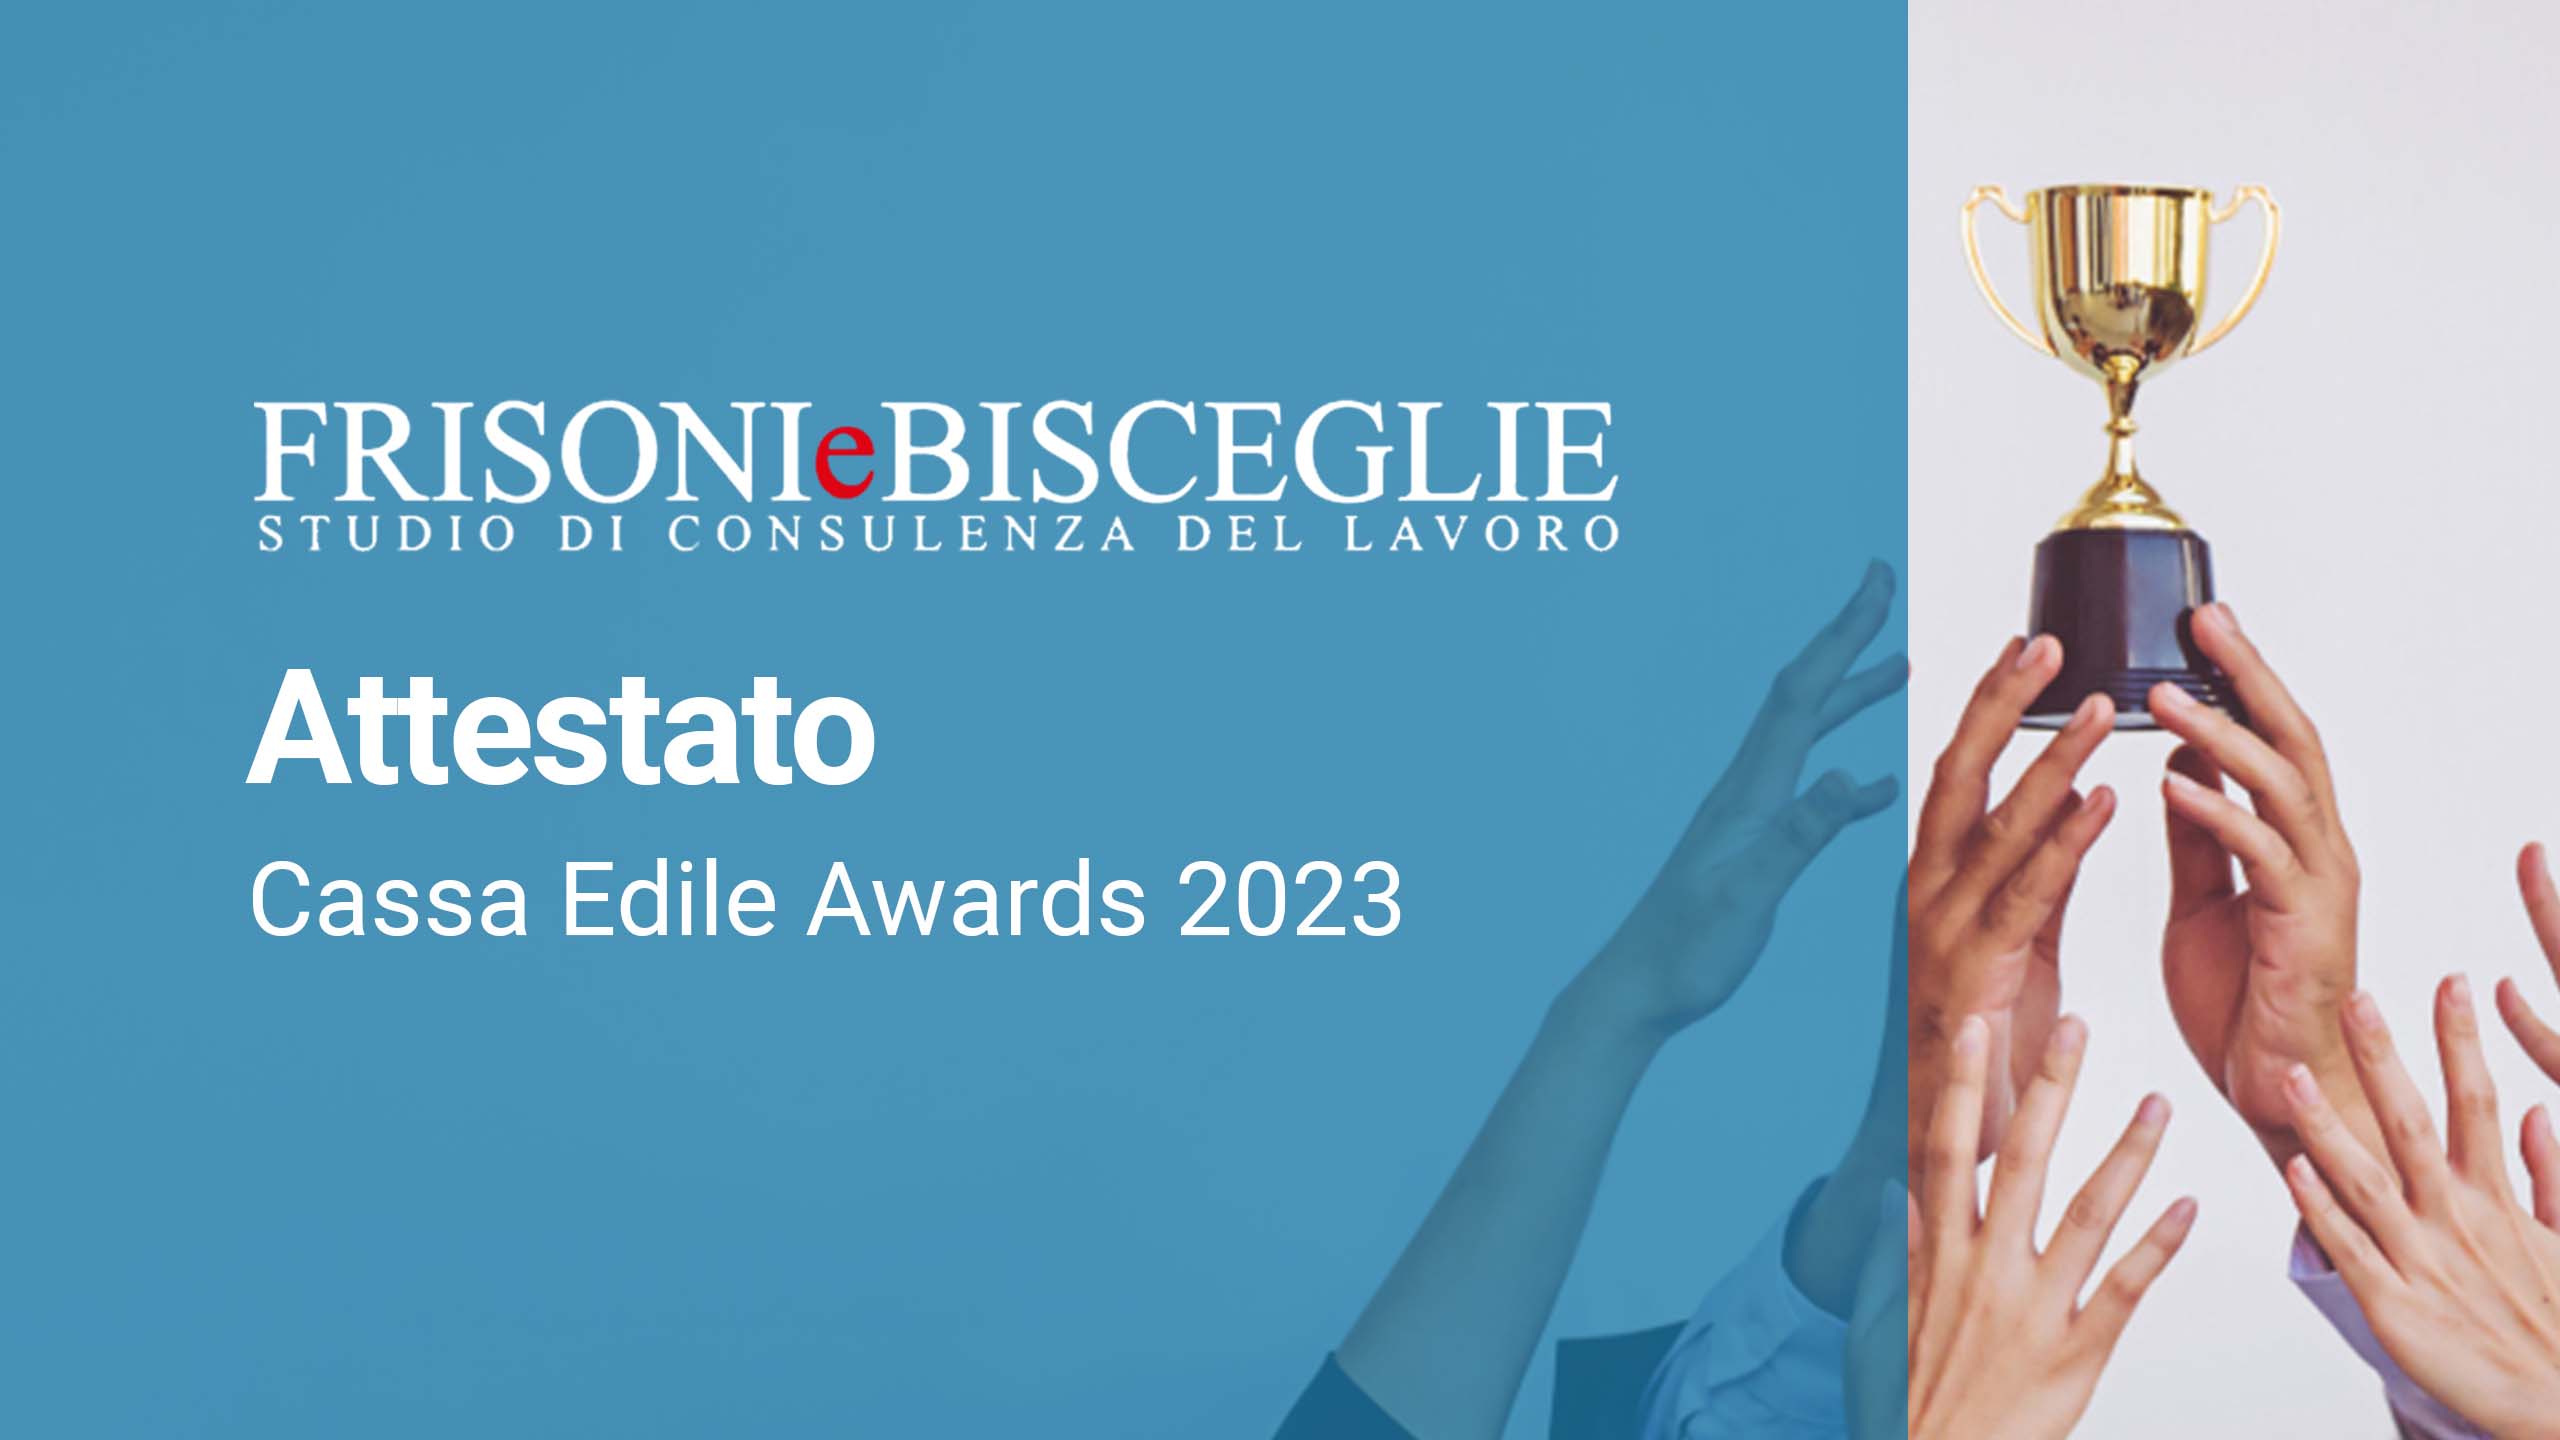 Cassa Edile Awards 2023: allo Studio il premio annuale per la gestione del rapporto di lavoro in edilizia